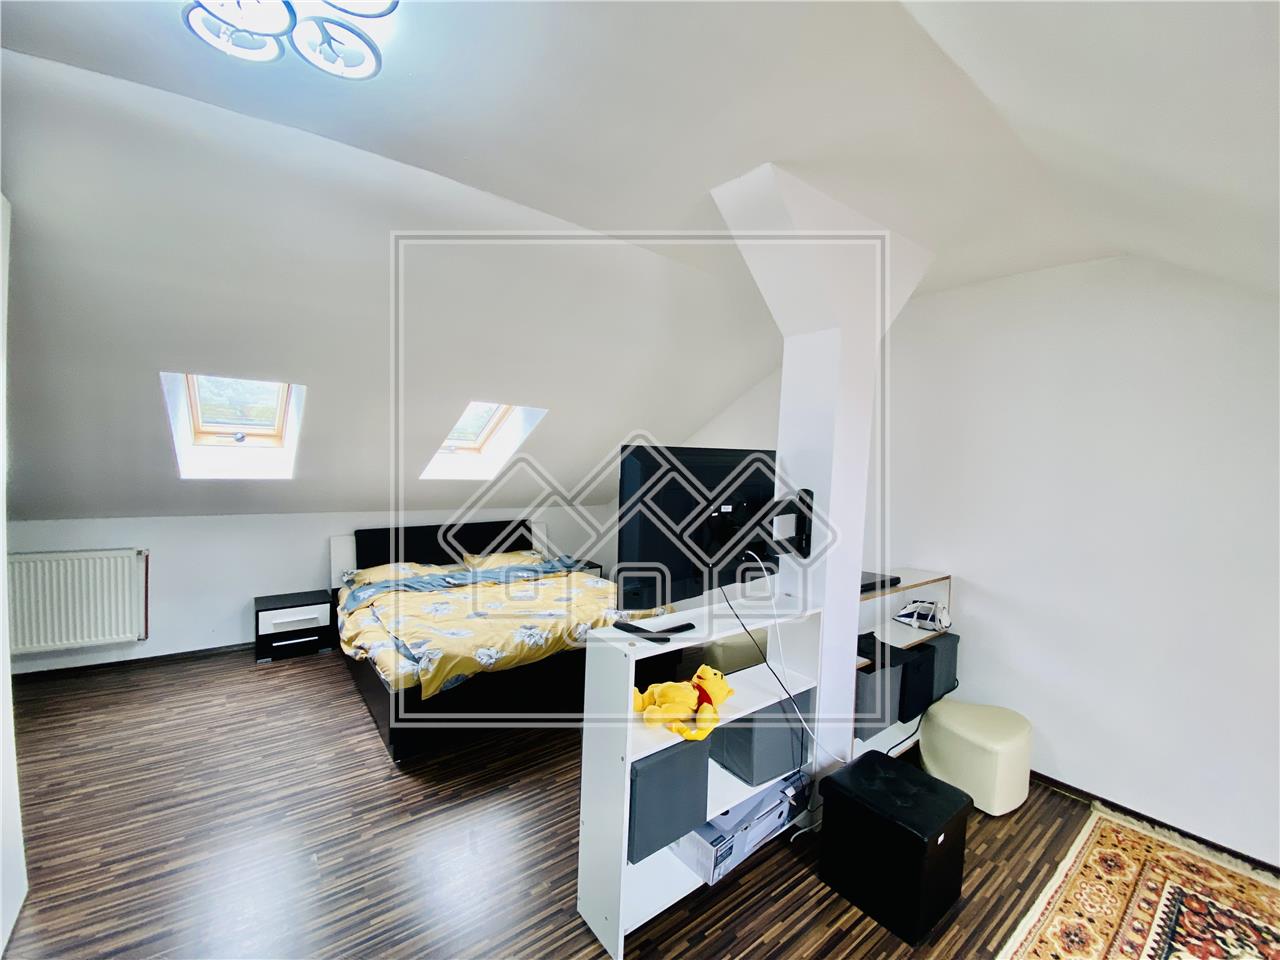 Apartament de vanzare in Sibiu - 128 mp utili - Zona Strand II